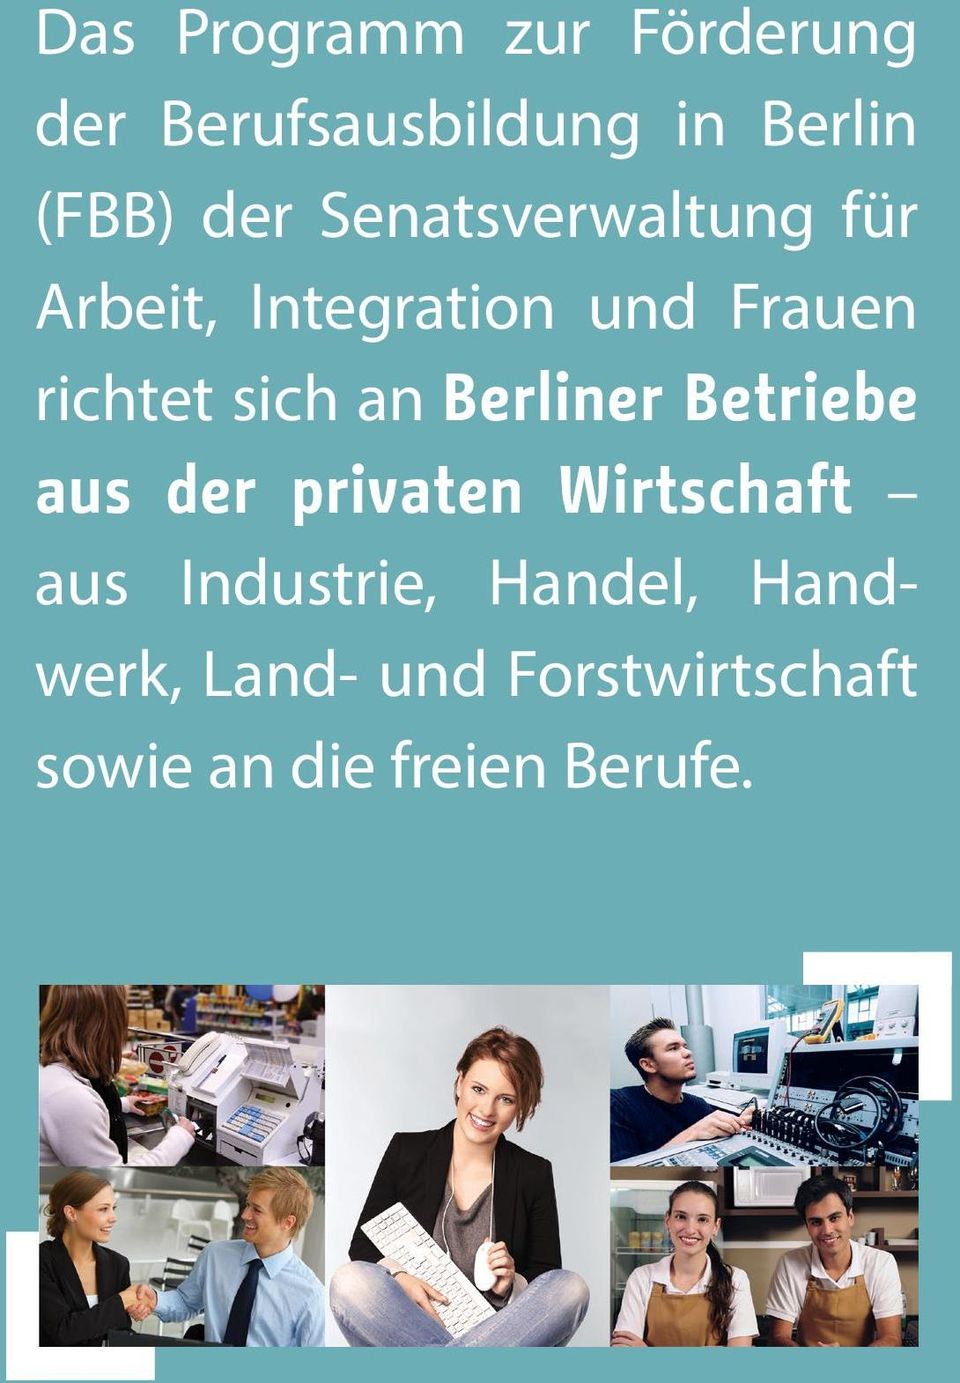 Berliner Betriebe aus der privaten Wirtschaft aus Industrie,